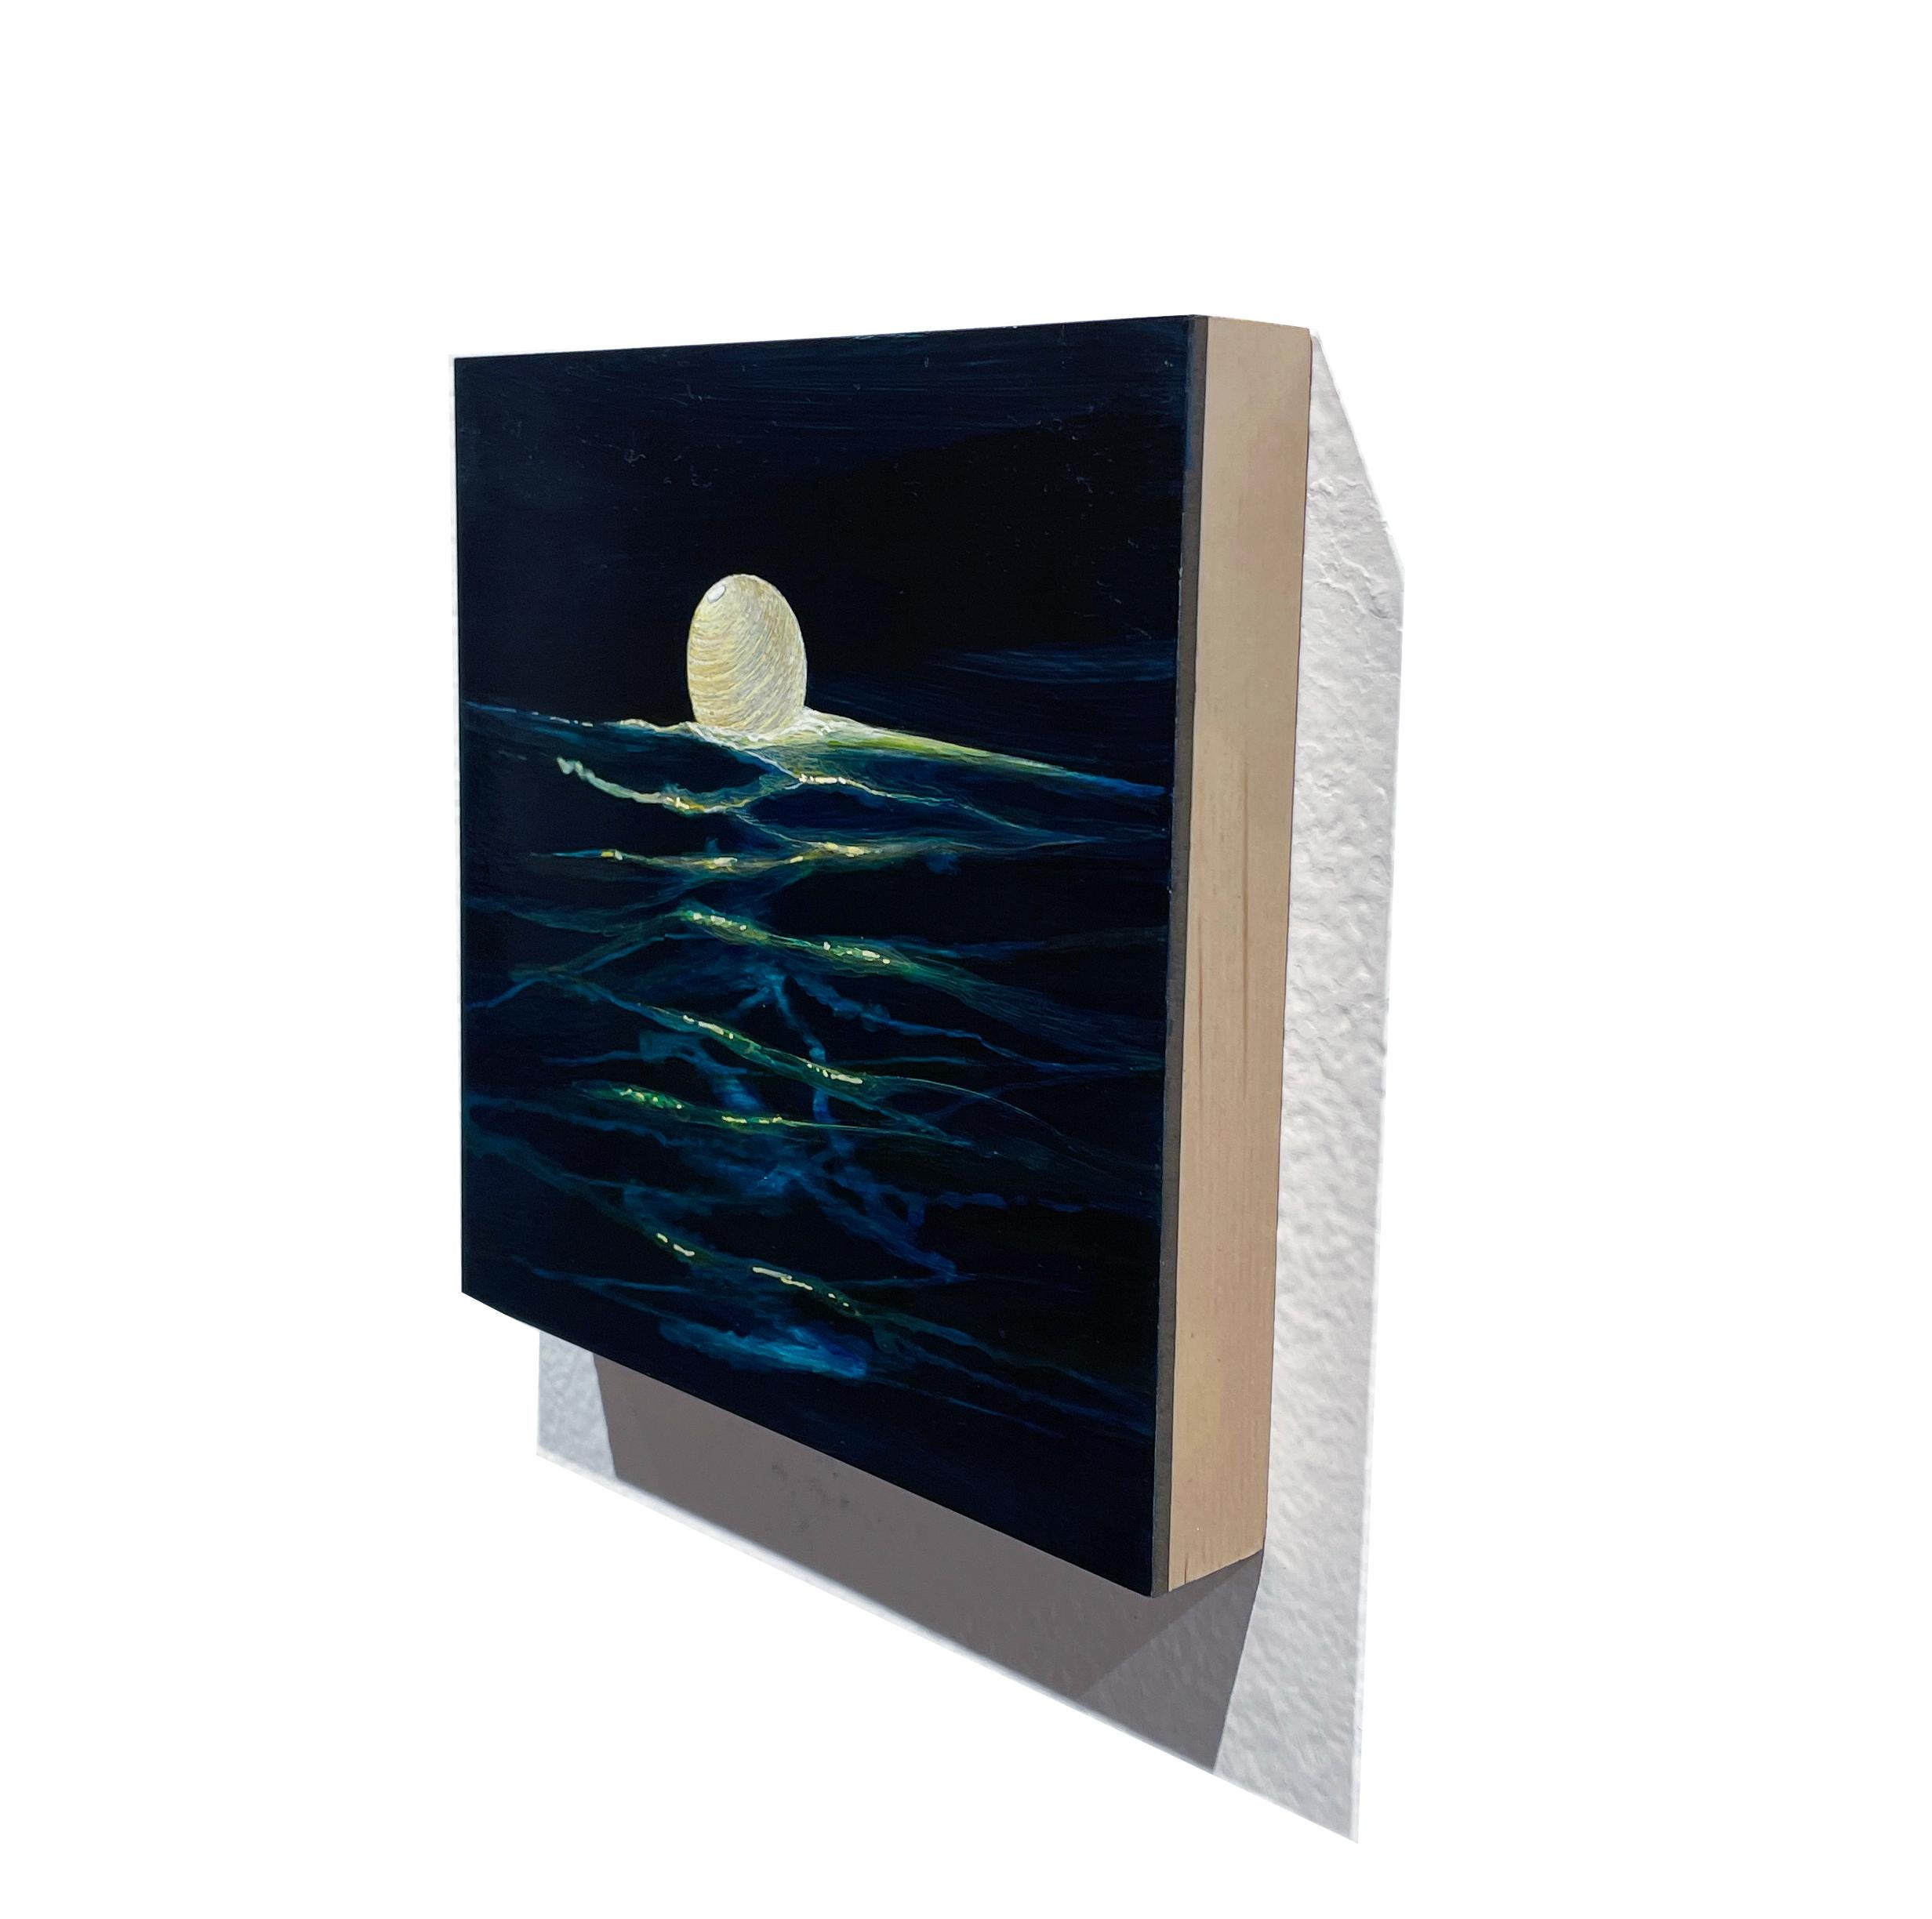 Ocean Current - Beleuchtete Papierlaterne auf tiefem Tealwasser, Acryl auf Tafel (Zeitgenössisch), Painting, von Christina Haglid